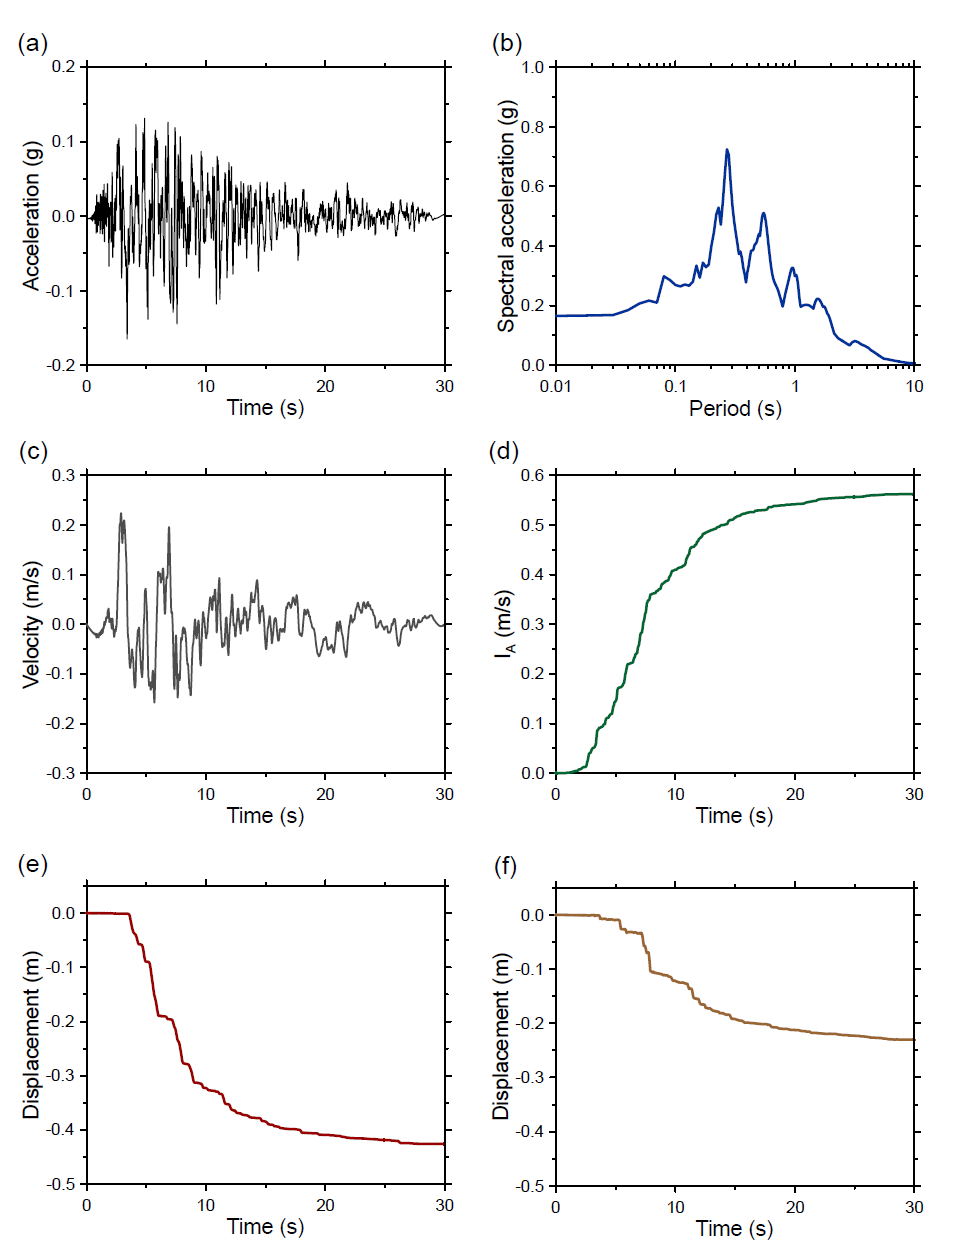 11번 지진파 해석 결과: (a) 가속도, (b) 스펙트럼, (c) 속도, (d) IA, (e) CFRD 침하량, (f) ECRD 침하량